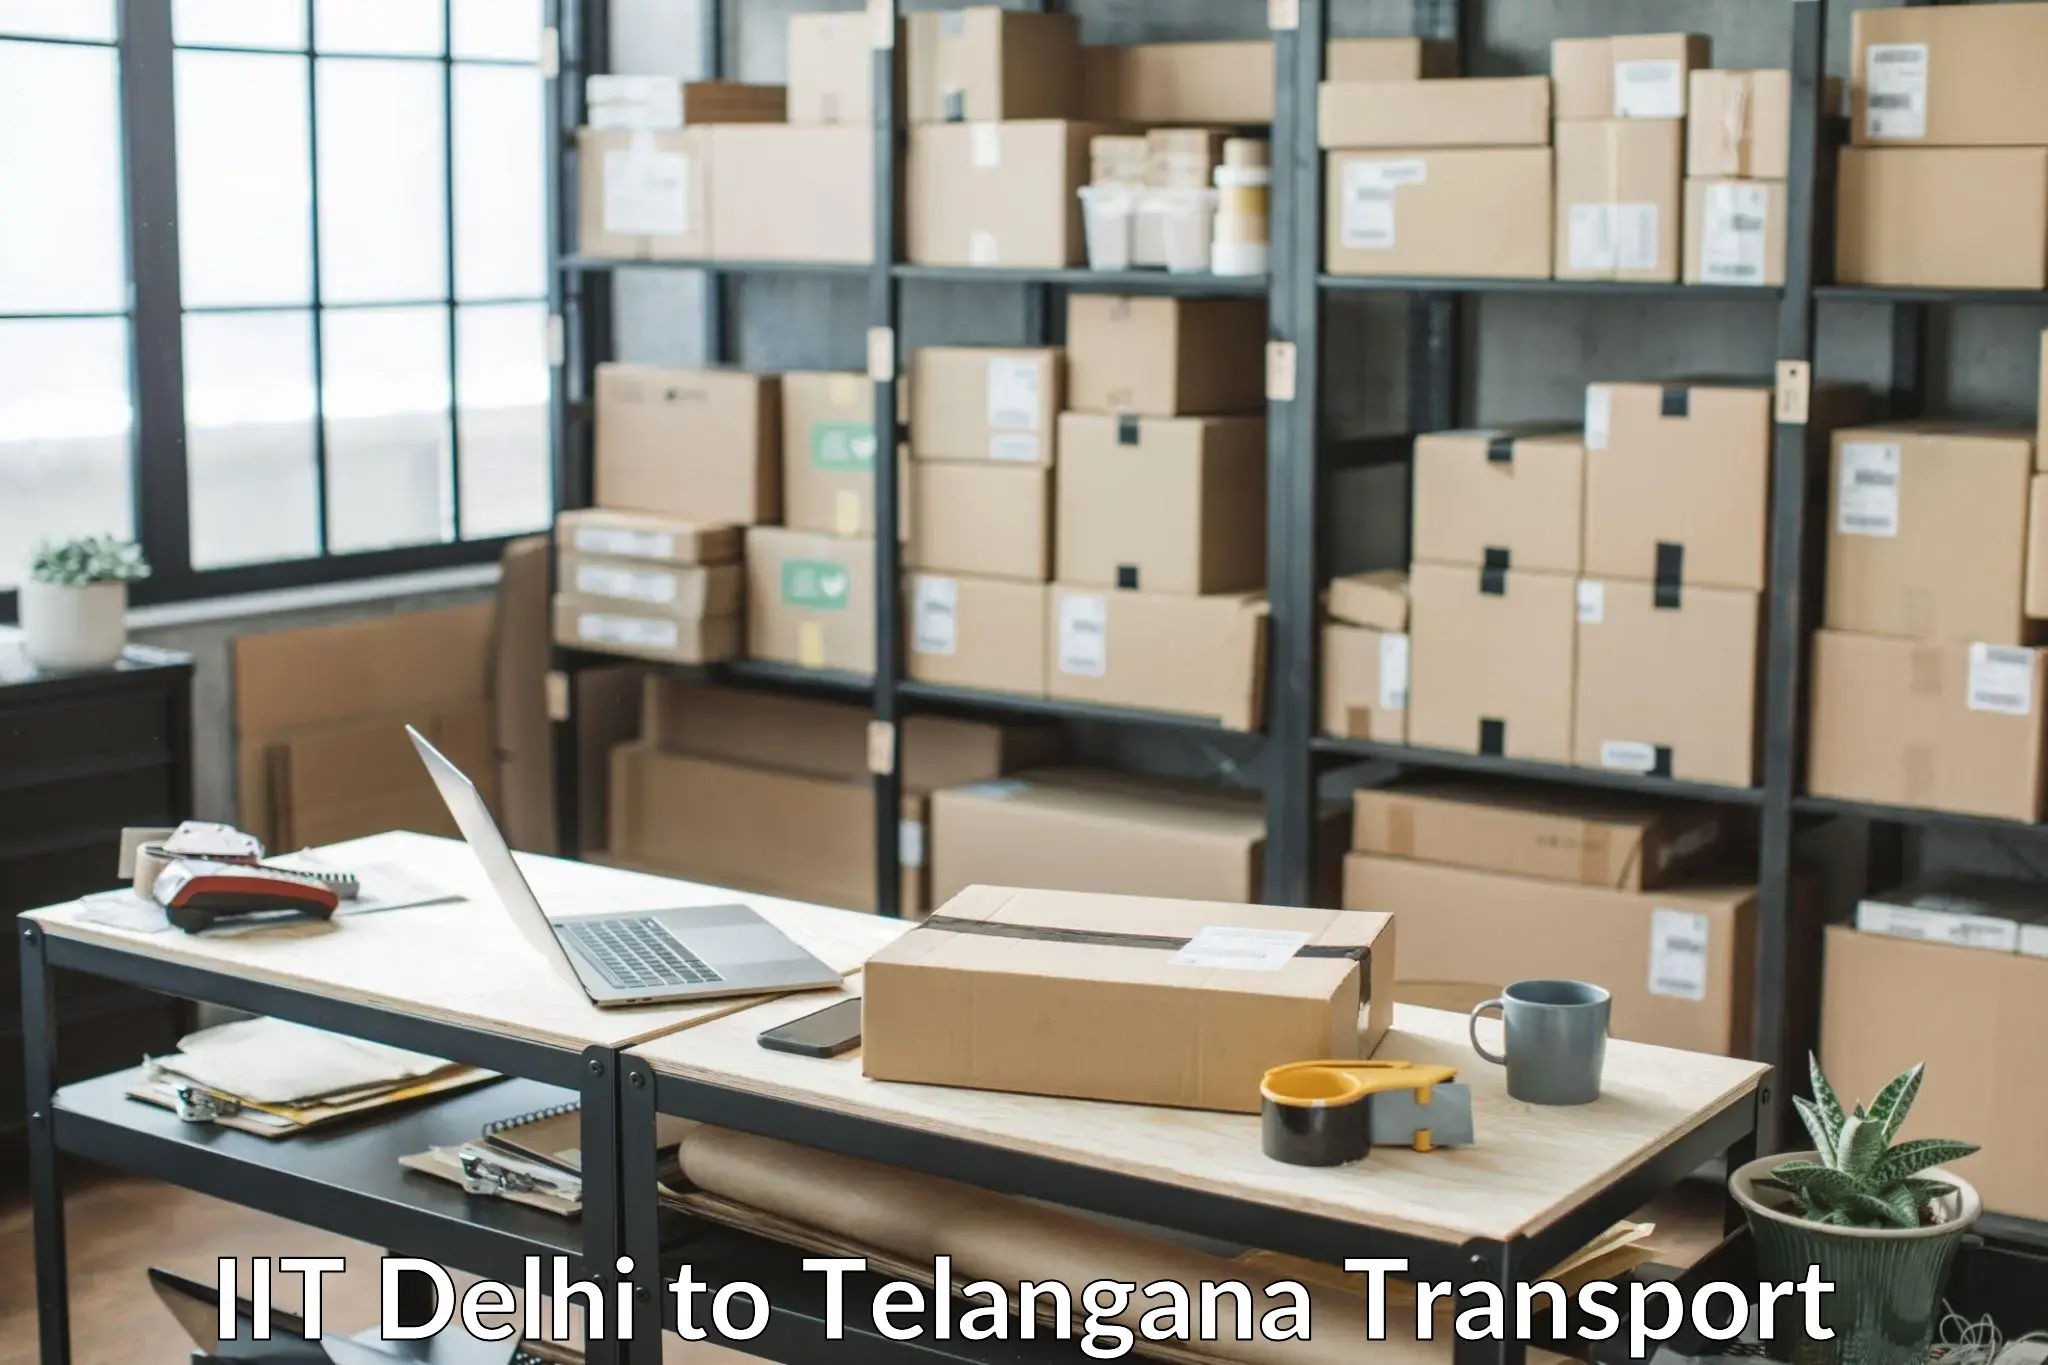 Land transport services IIT Delhi to Balanagar